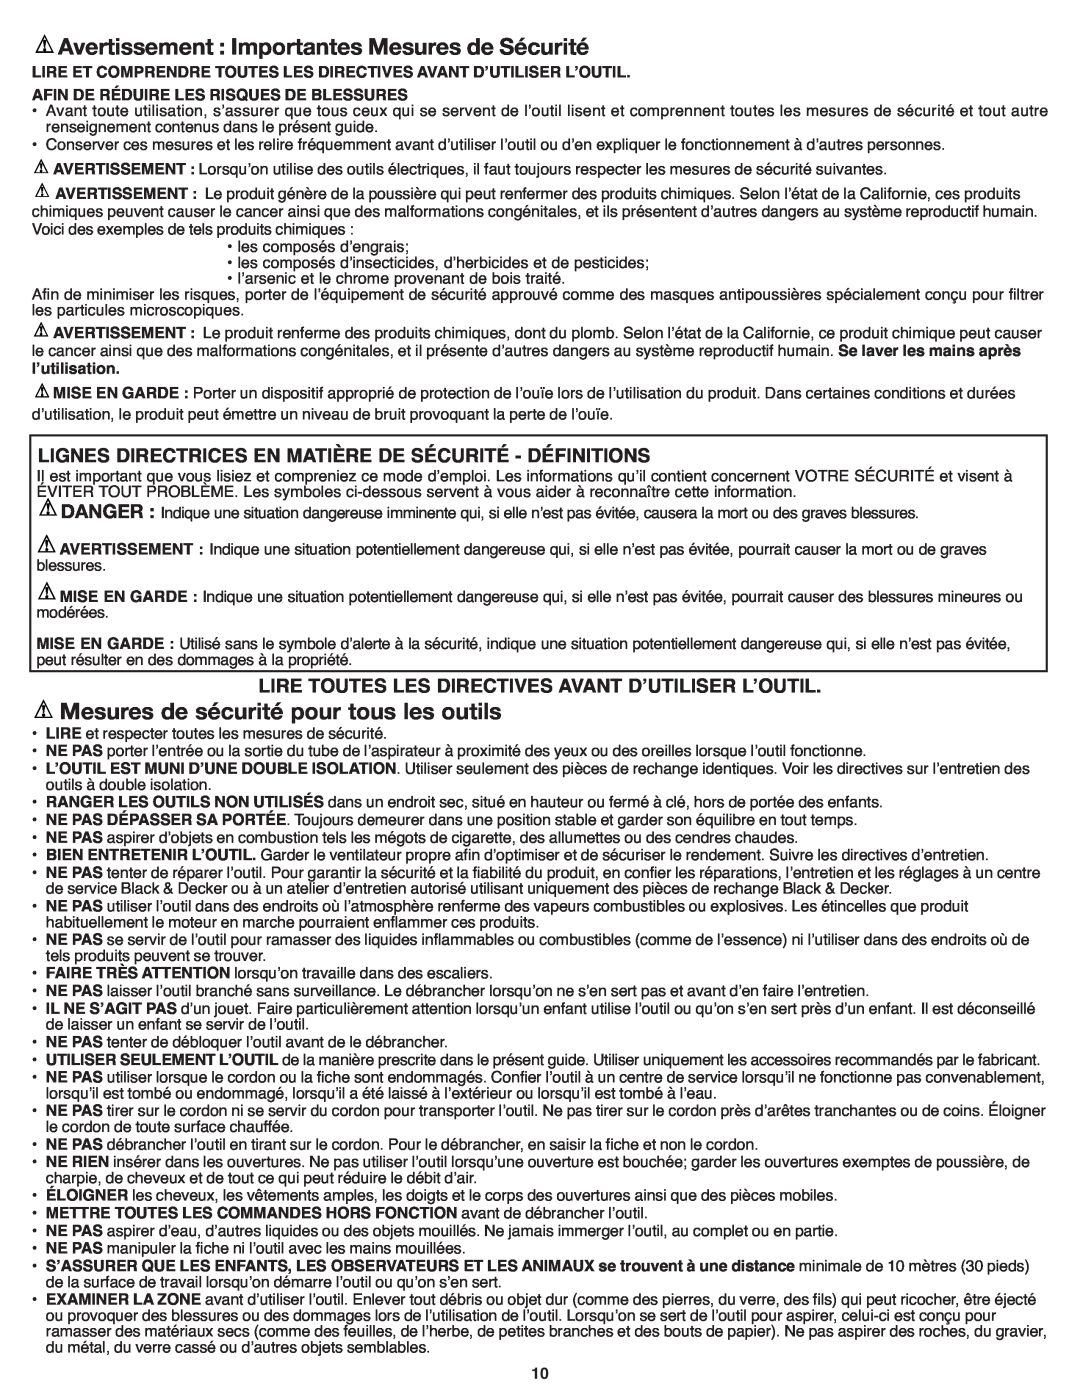 Black & Decker BV3800 Avertissement Importantes Mesures de Sécurité, Lire Toutes Les Directives Avant Dʼutiliser Lʼoutil 